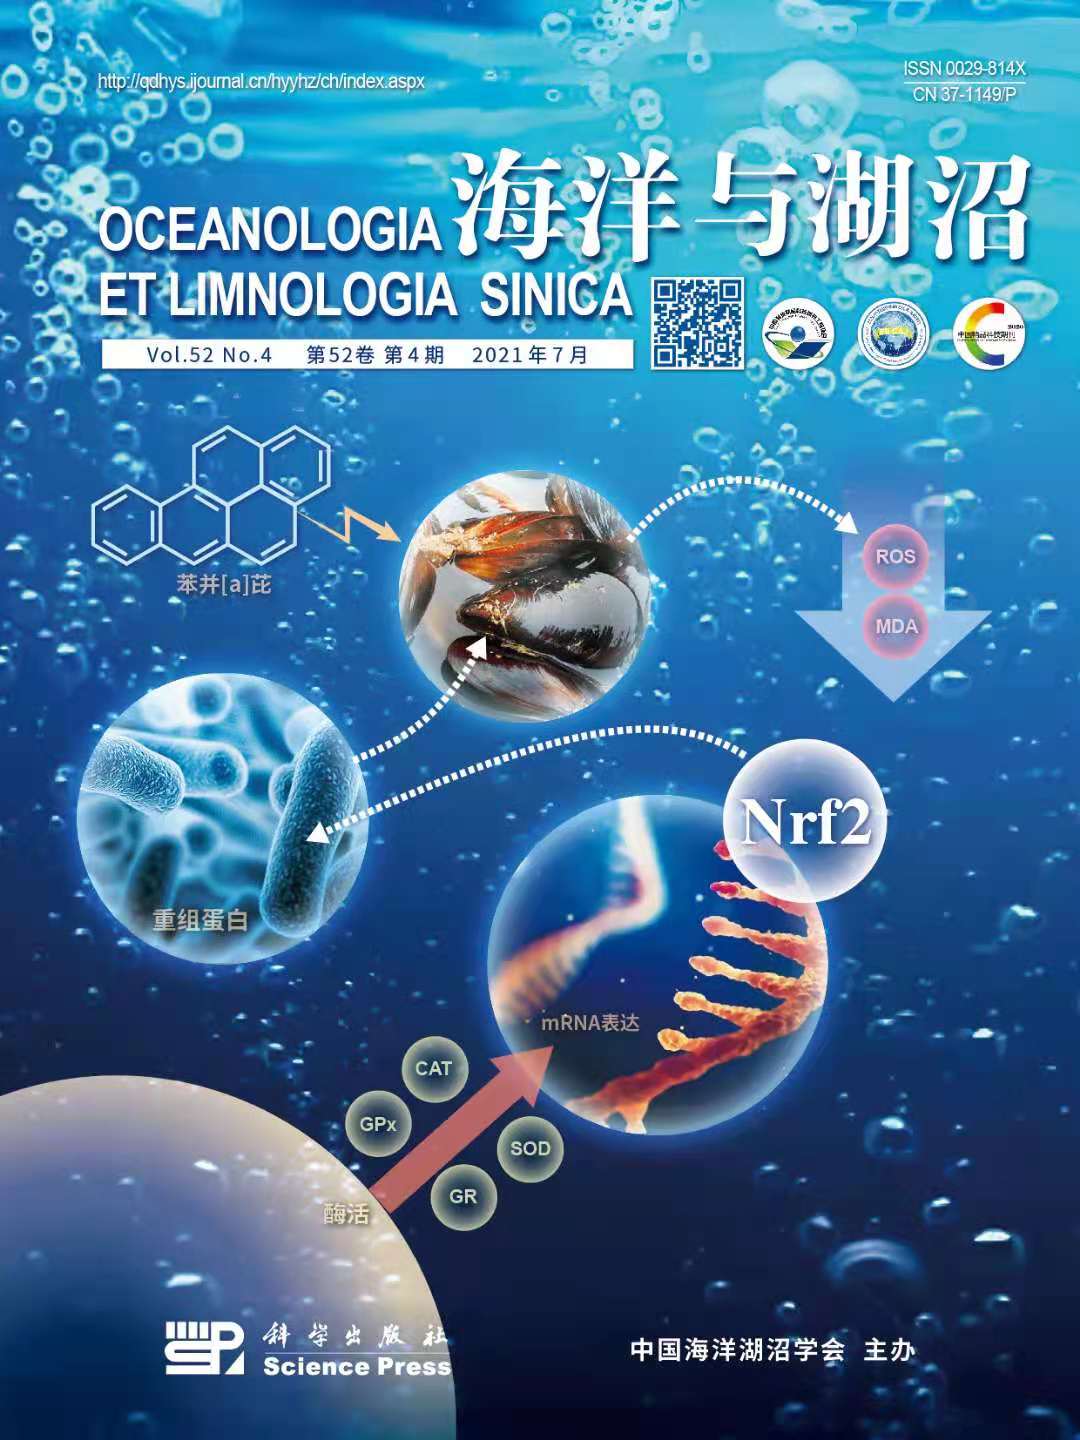 《海洋与湖沼》杂志以封面形式发表我校“Nrf2通路参与水生动物氧化应激调控的研究进展”